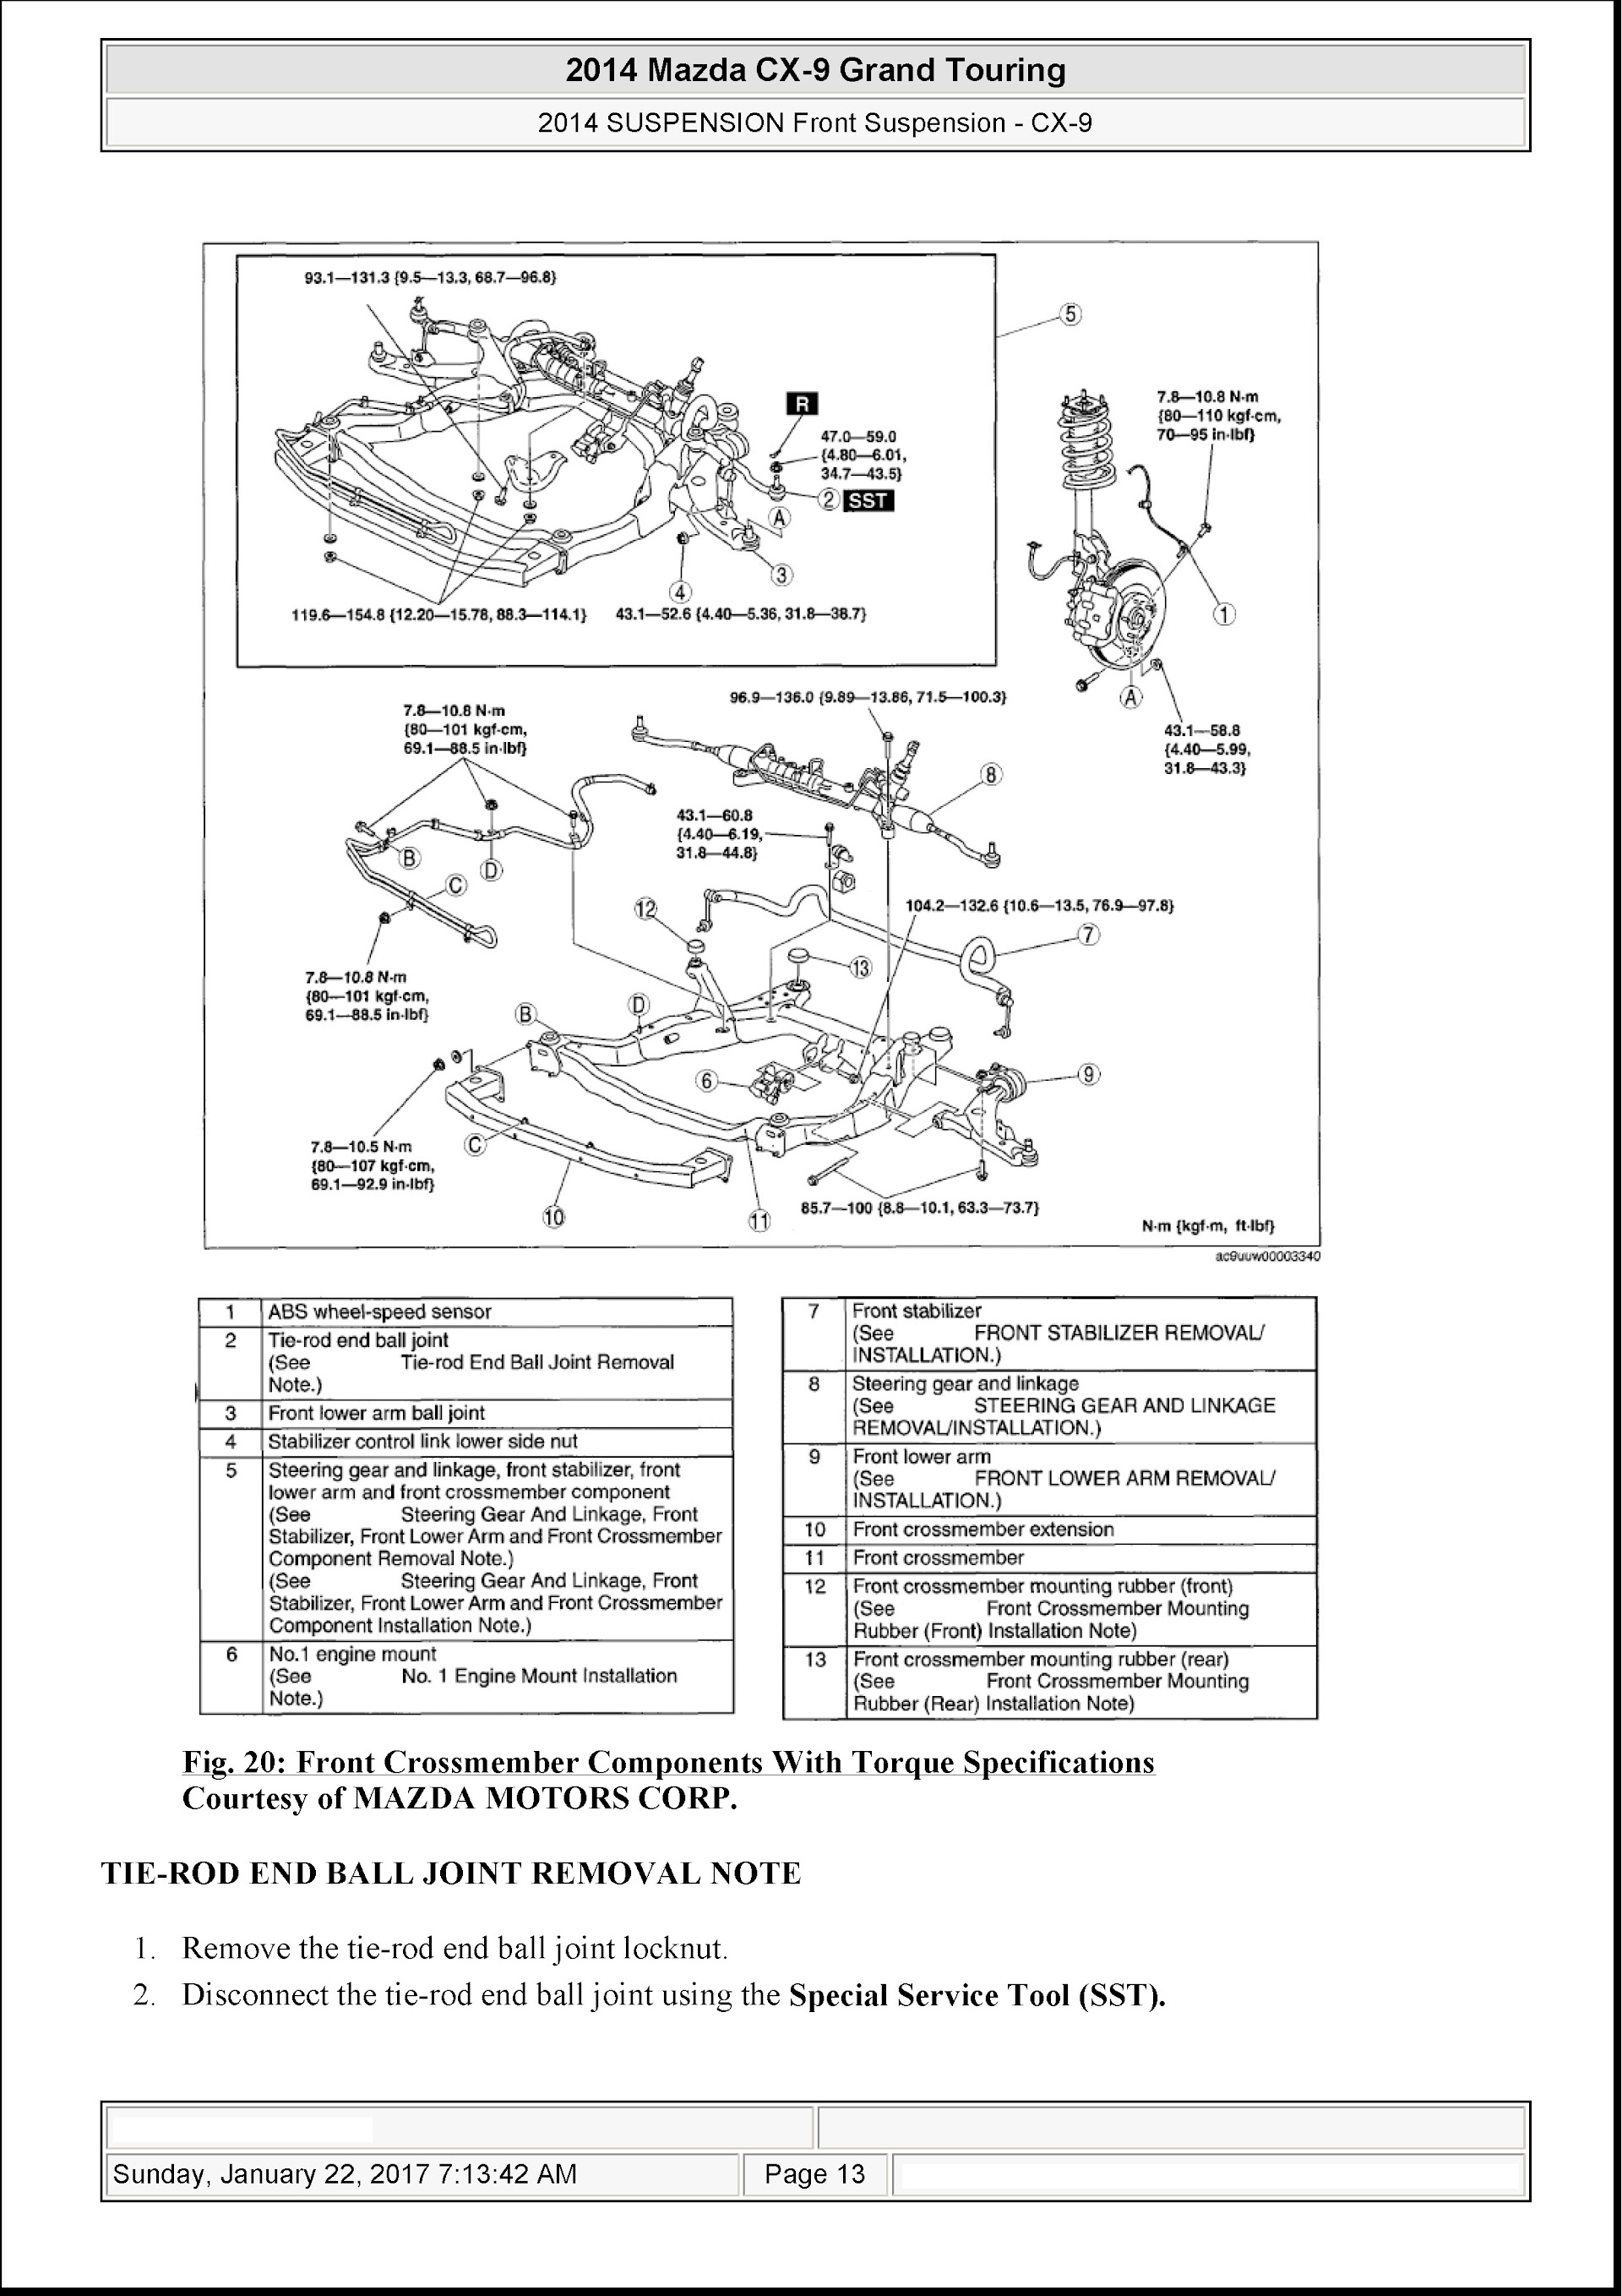 Download 2010-2014 Mazda CX-9 Grand Touring Repair Manual